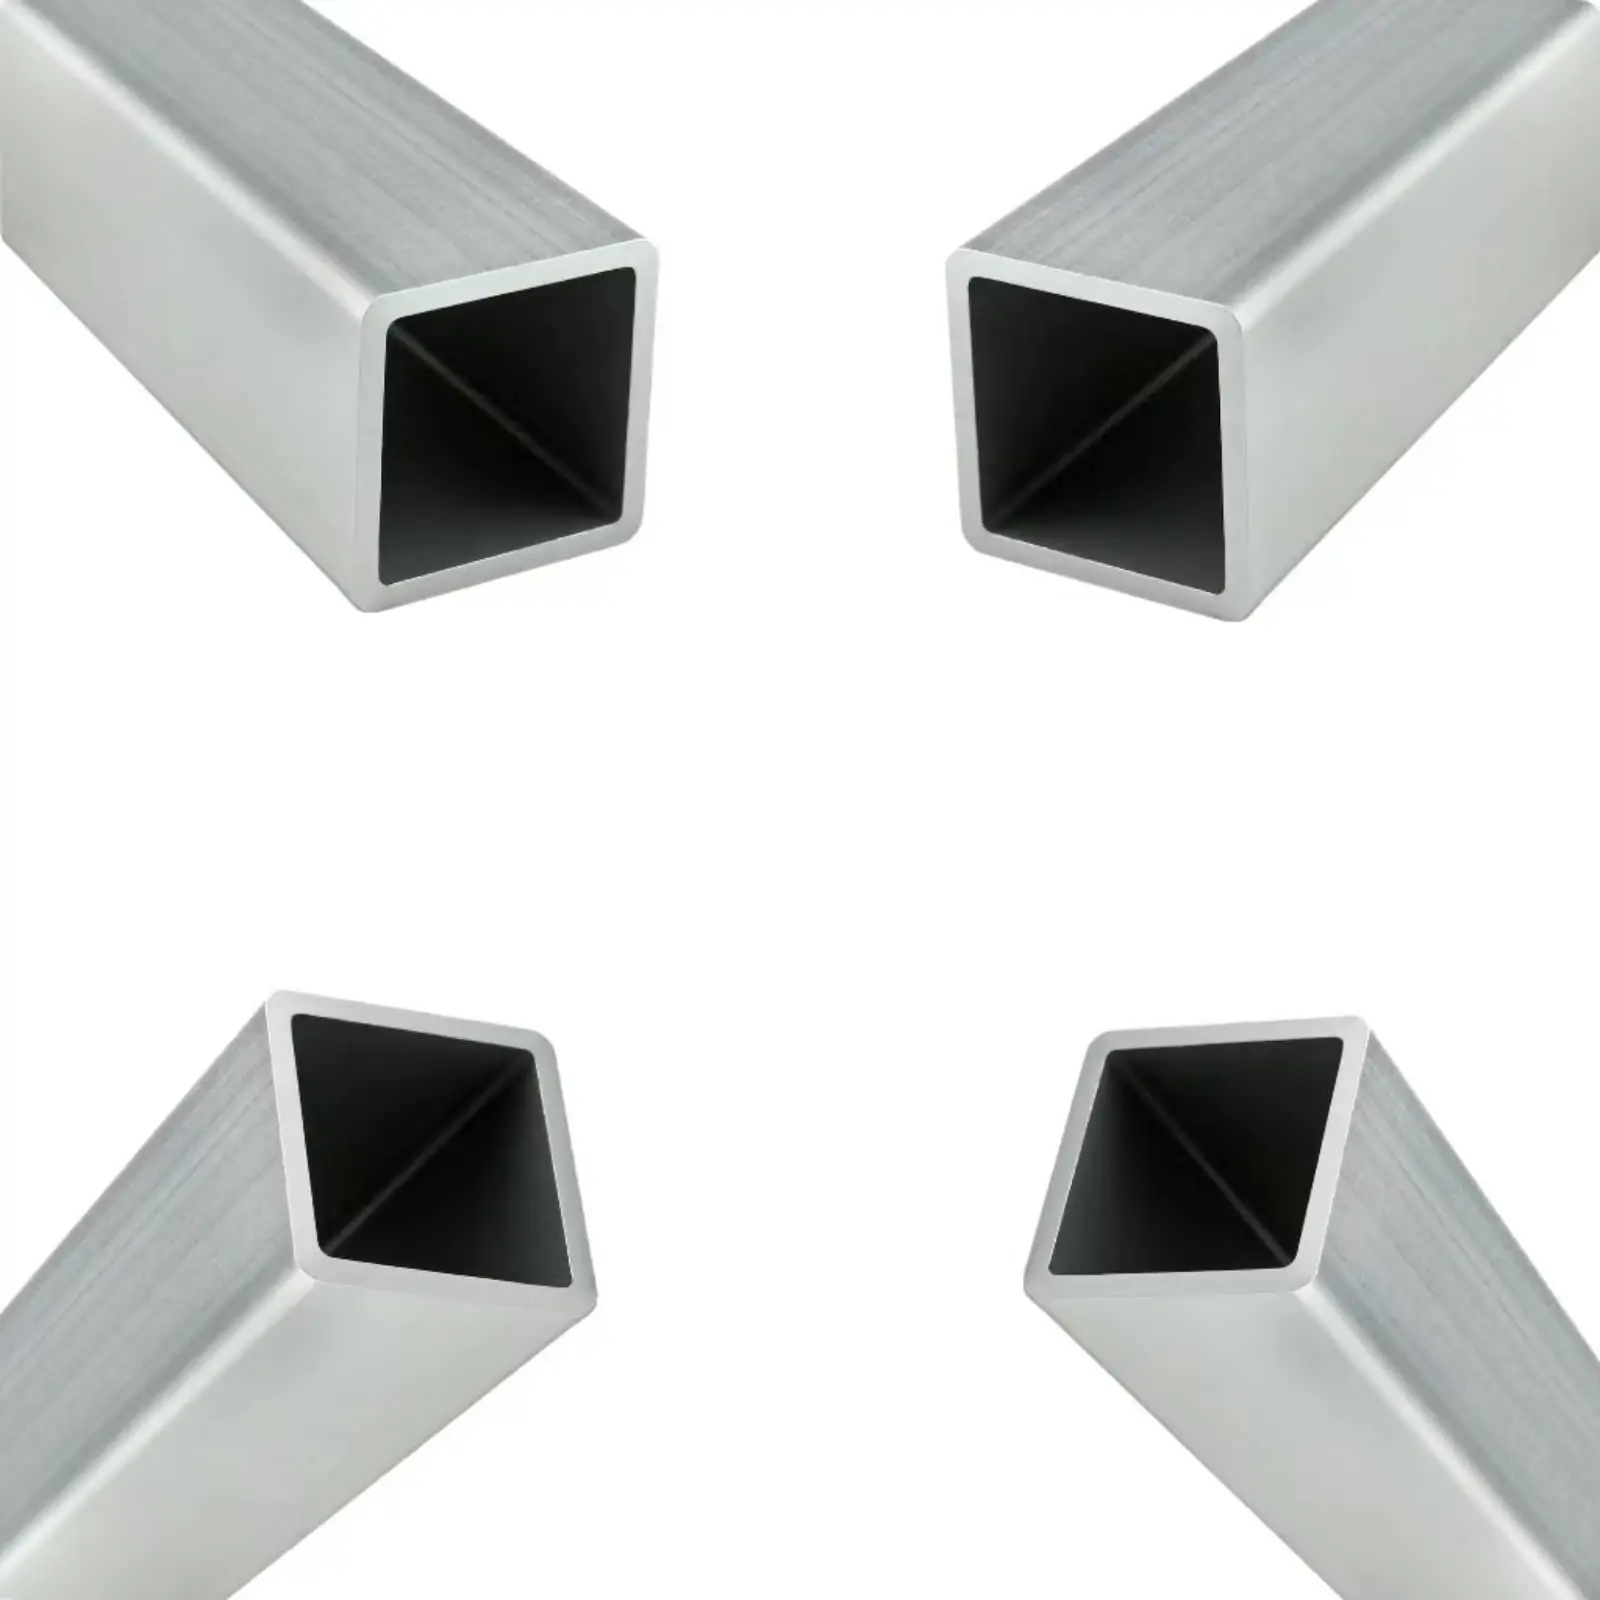 6063 6061 6005 aluminum tube tubing pipe aluminum extrusion profiles